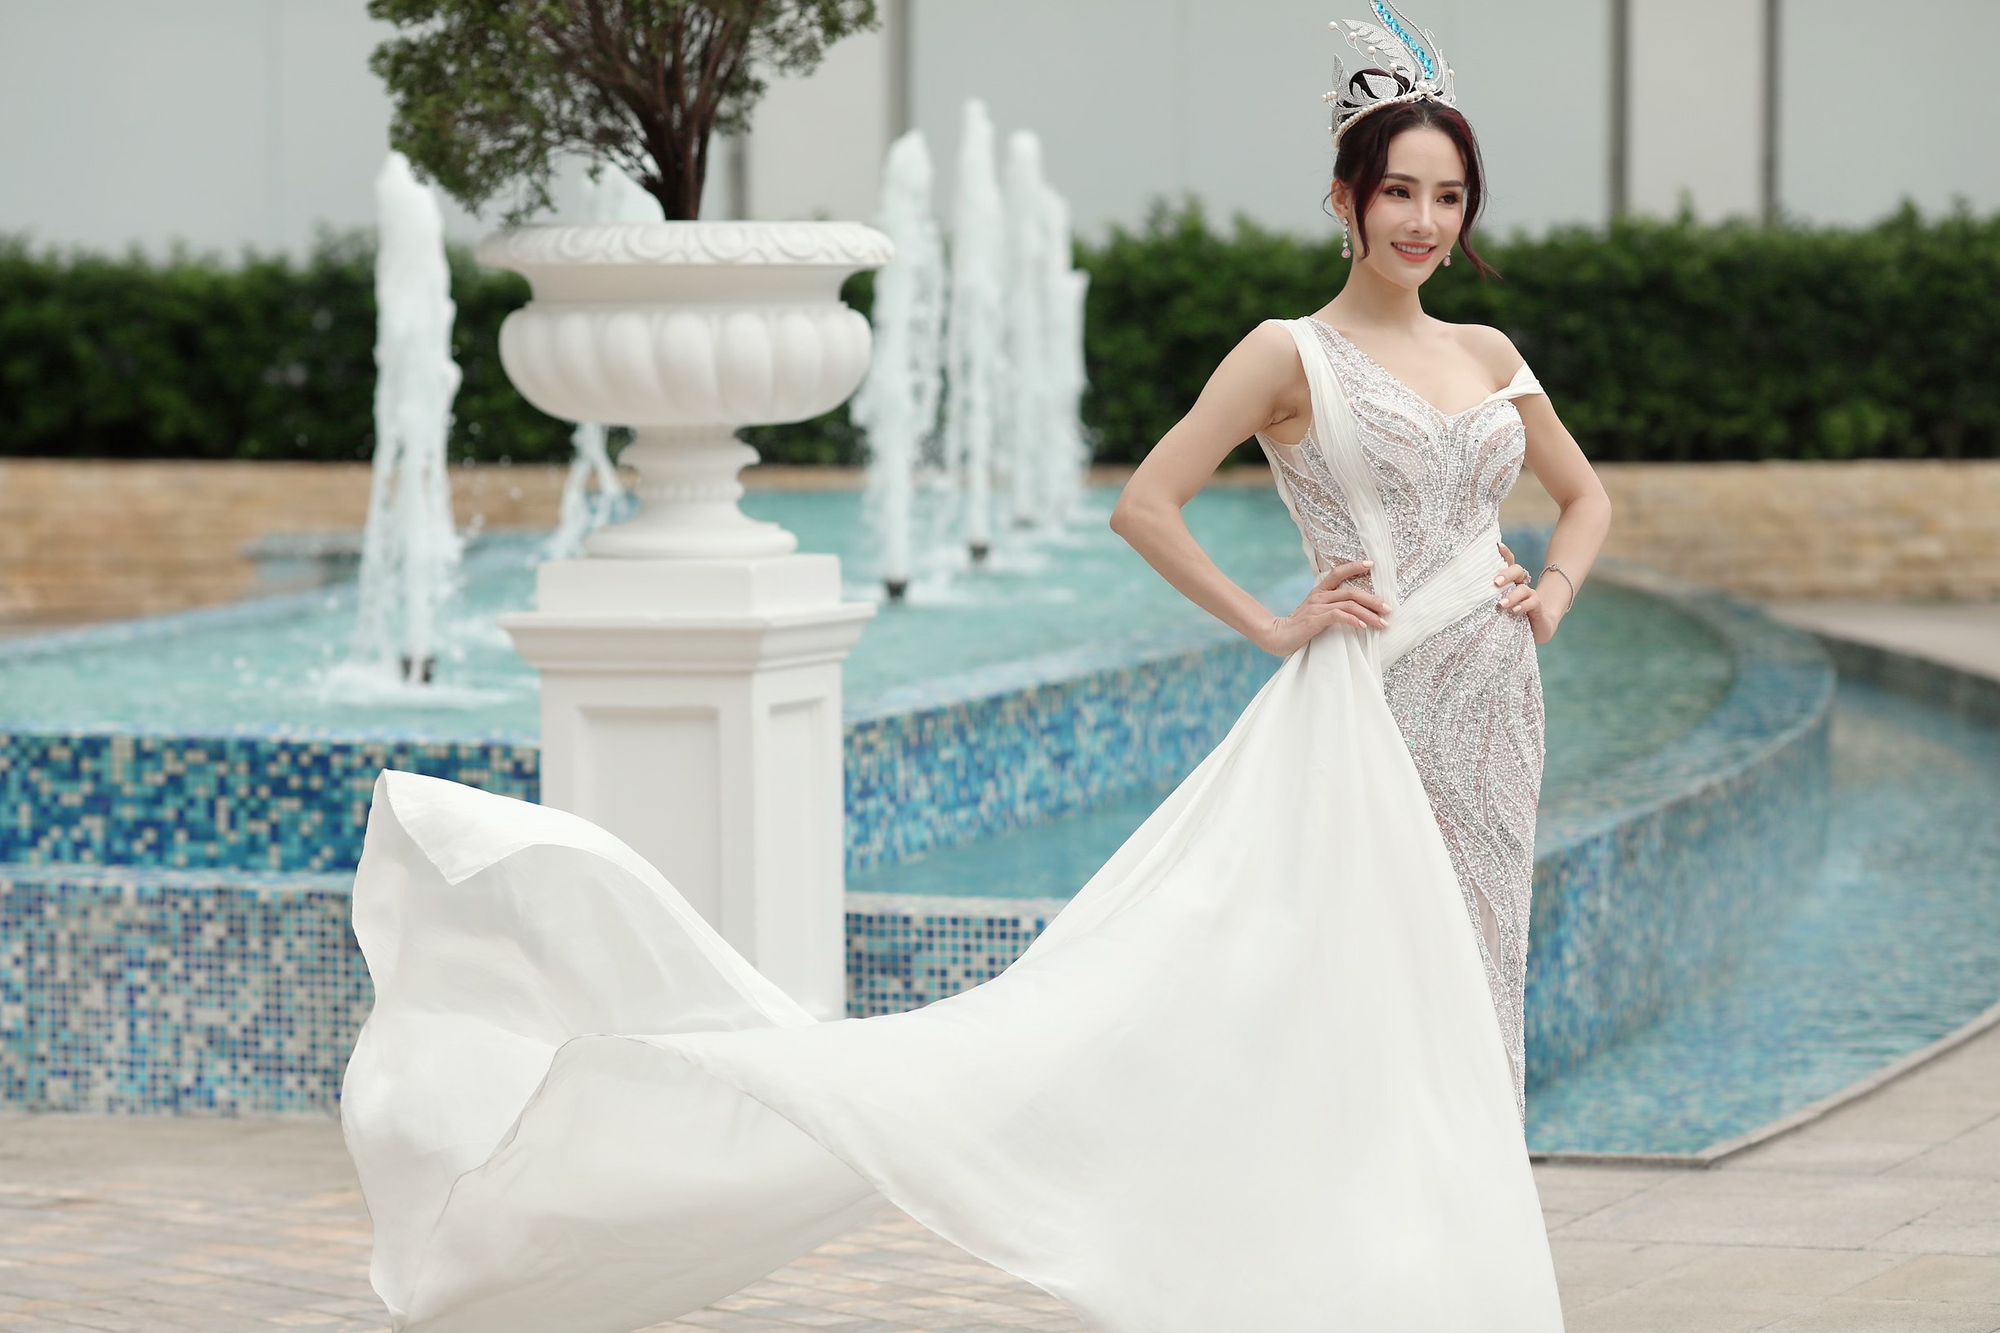 Hoa hậu Hoàng Thanh Loan: “Hoạt động thiện nguyện là nguồn năng lượng nuôi dưỡng tâm hồn tôi” - Ảnh 1.